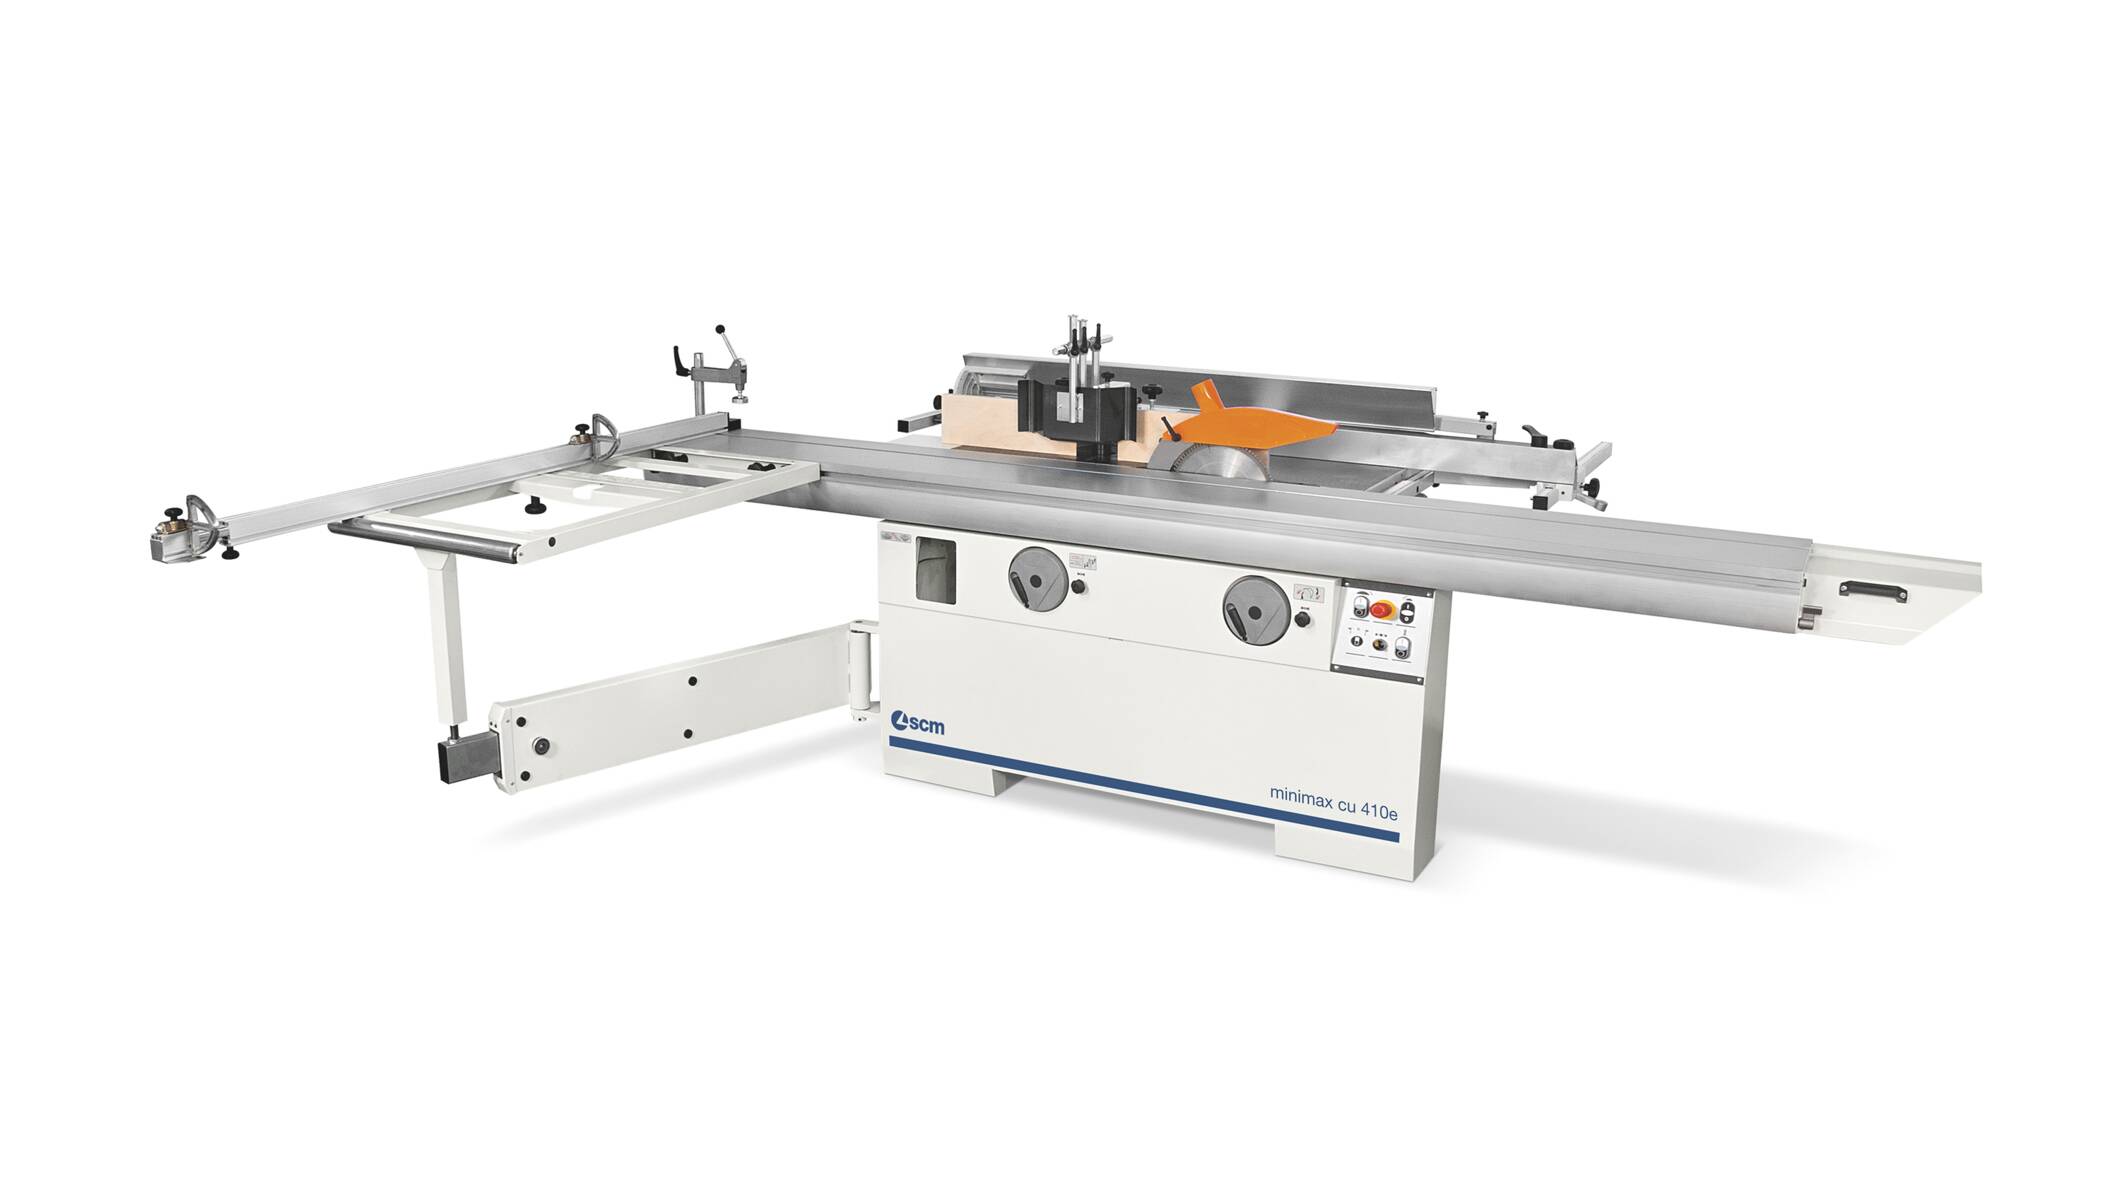 Maquinas para carpinteria - Máquinas combinadas universales - minimax cu 410e